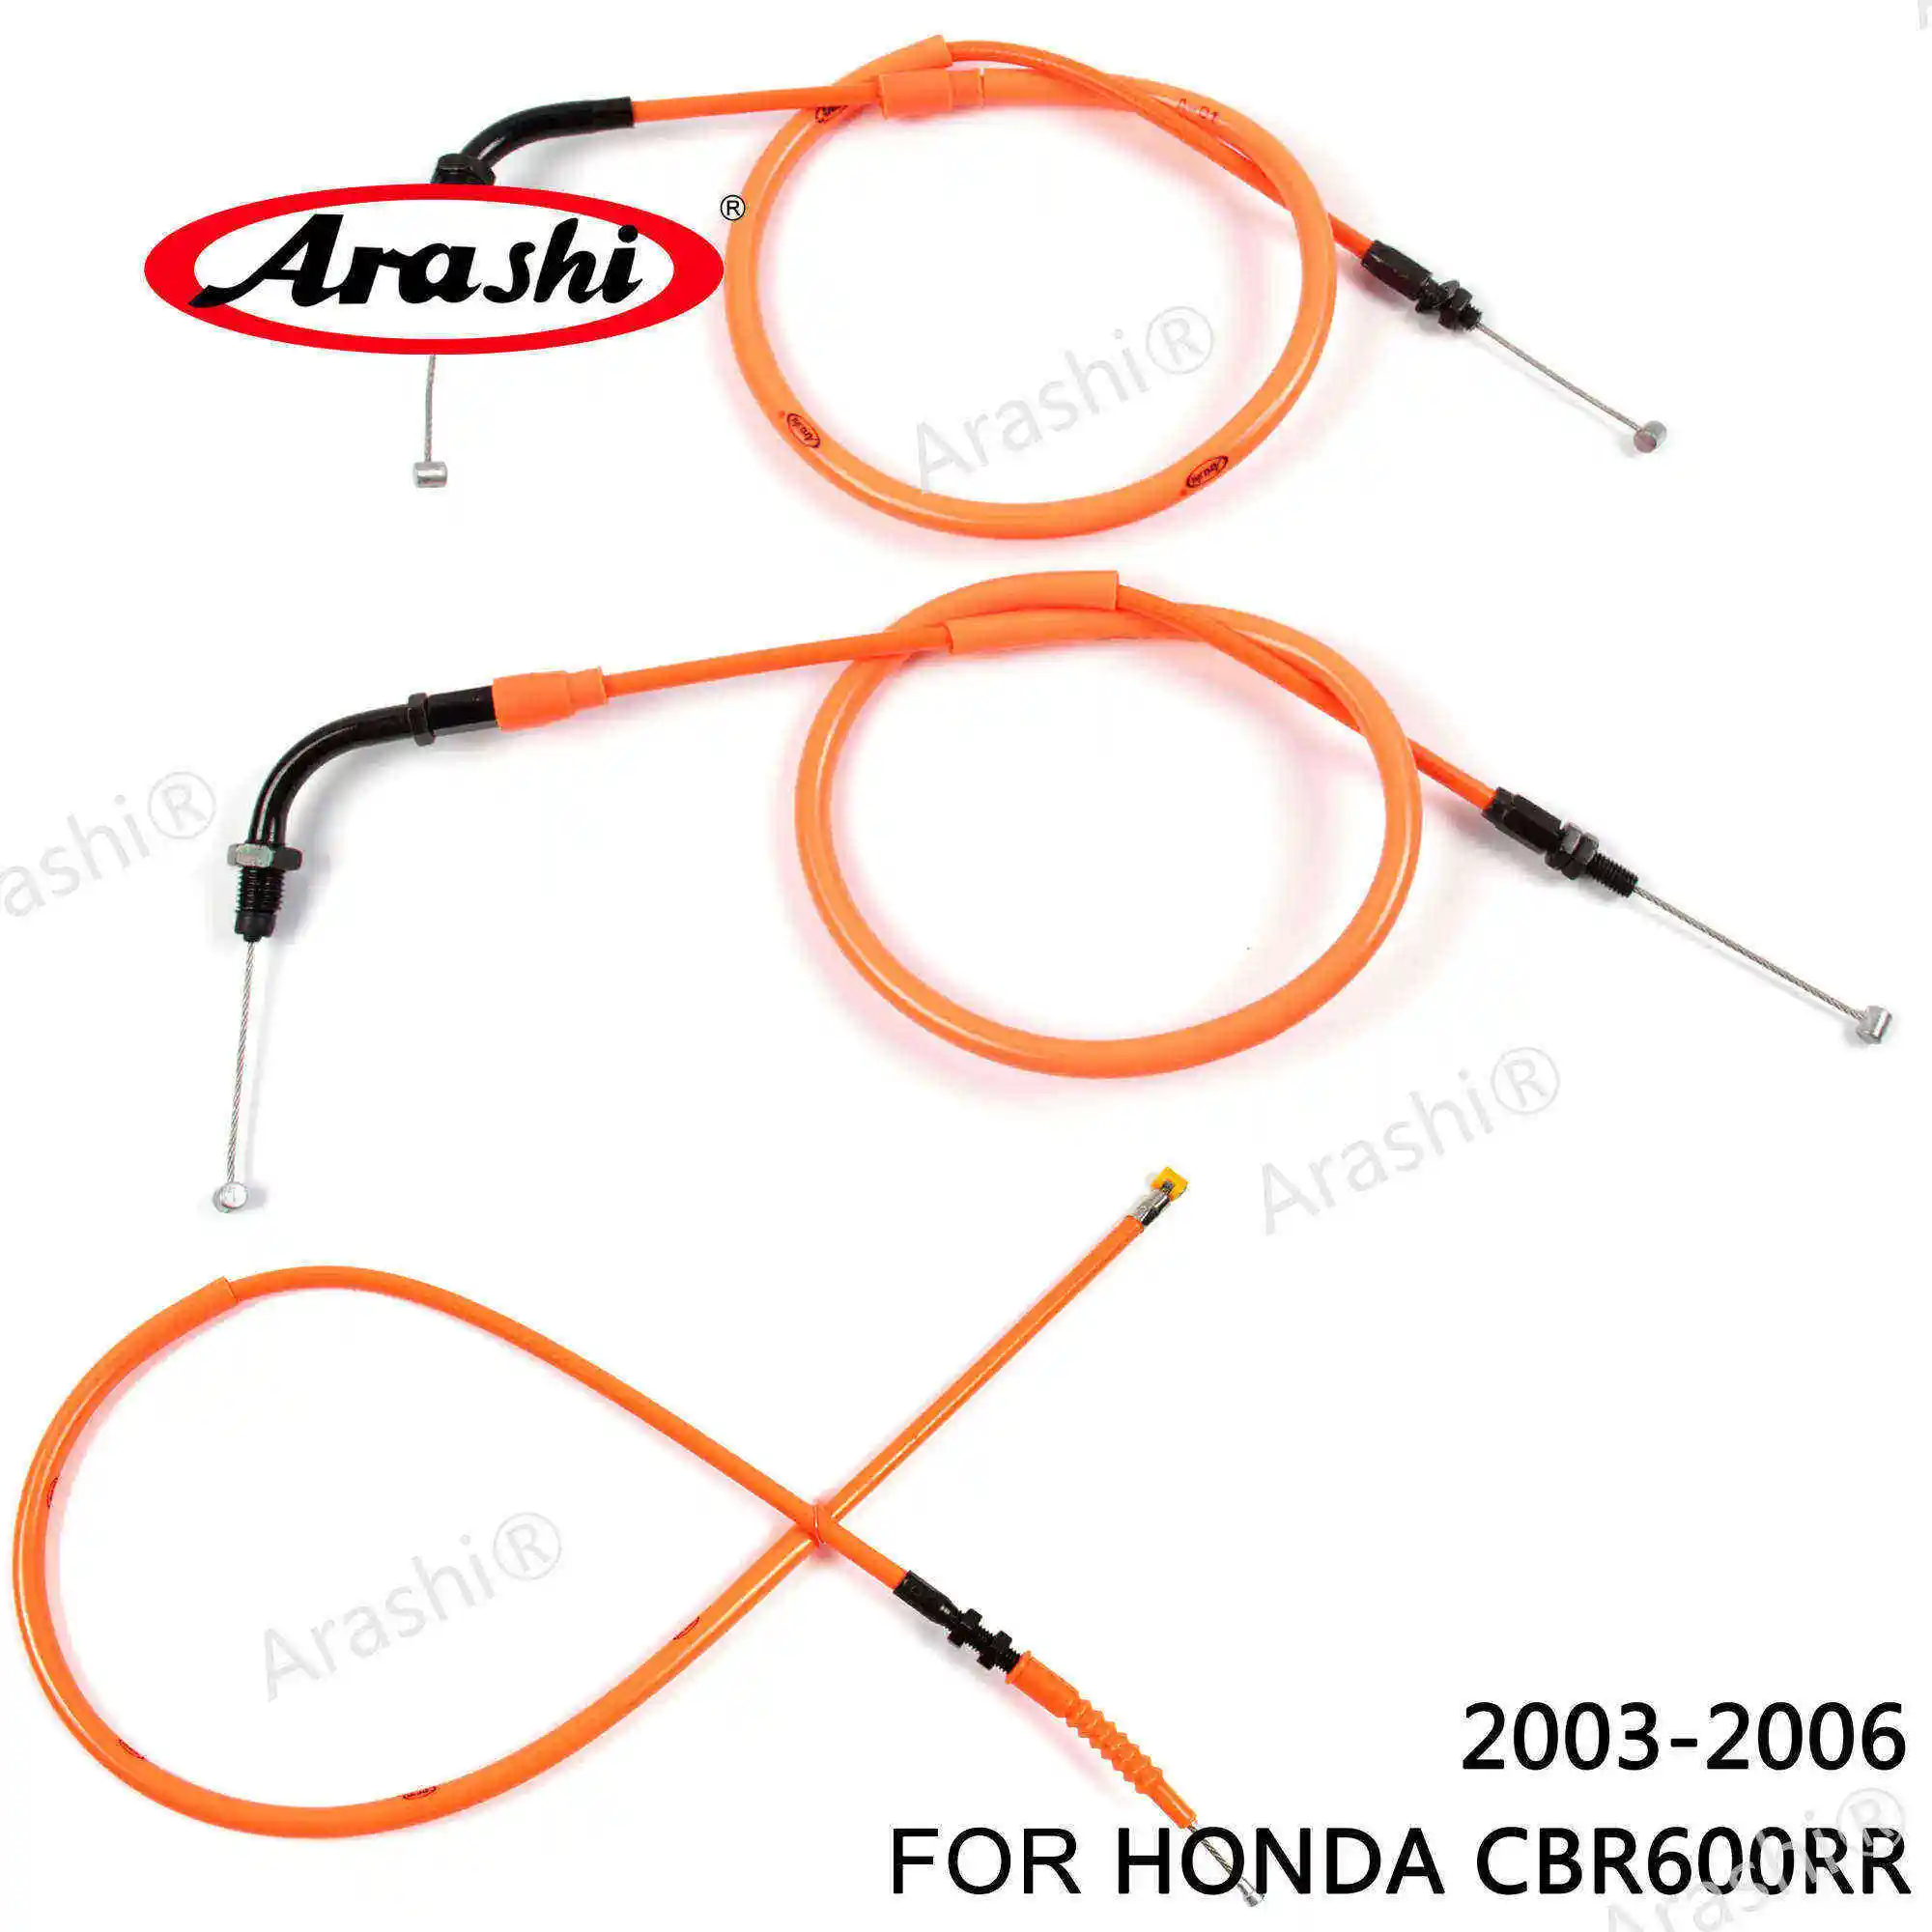 Араши Аксессуары для мотоциклов дроссельной заслонки провод трос сцепления Нержавеющая линия для HONDA CBR600RR 2003 2004 2005 2006 CBR 600 RR 1 комплект - Цвет: 1 Orange set